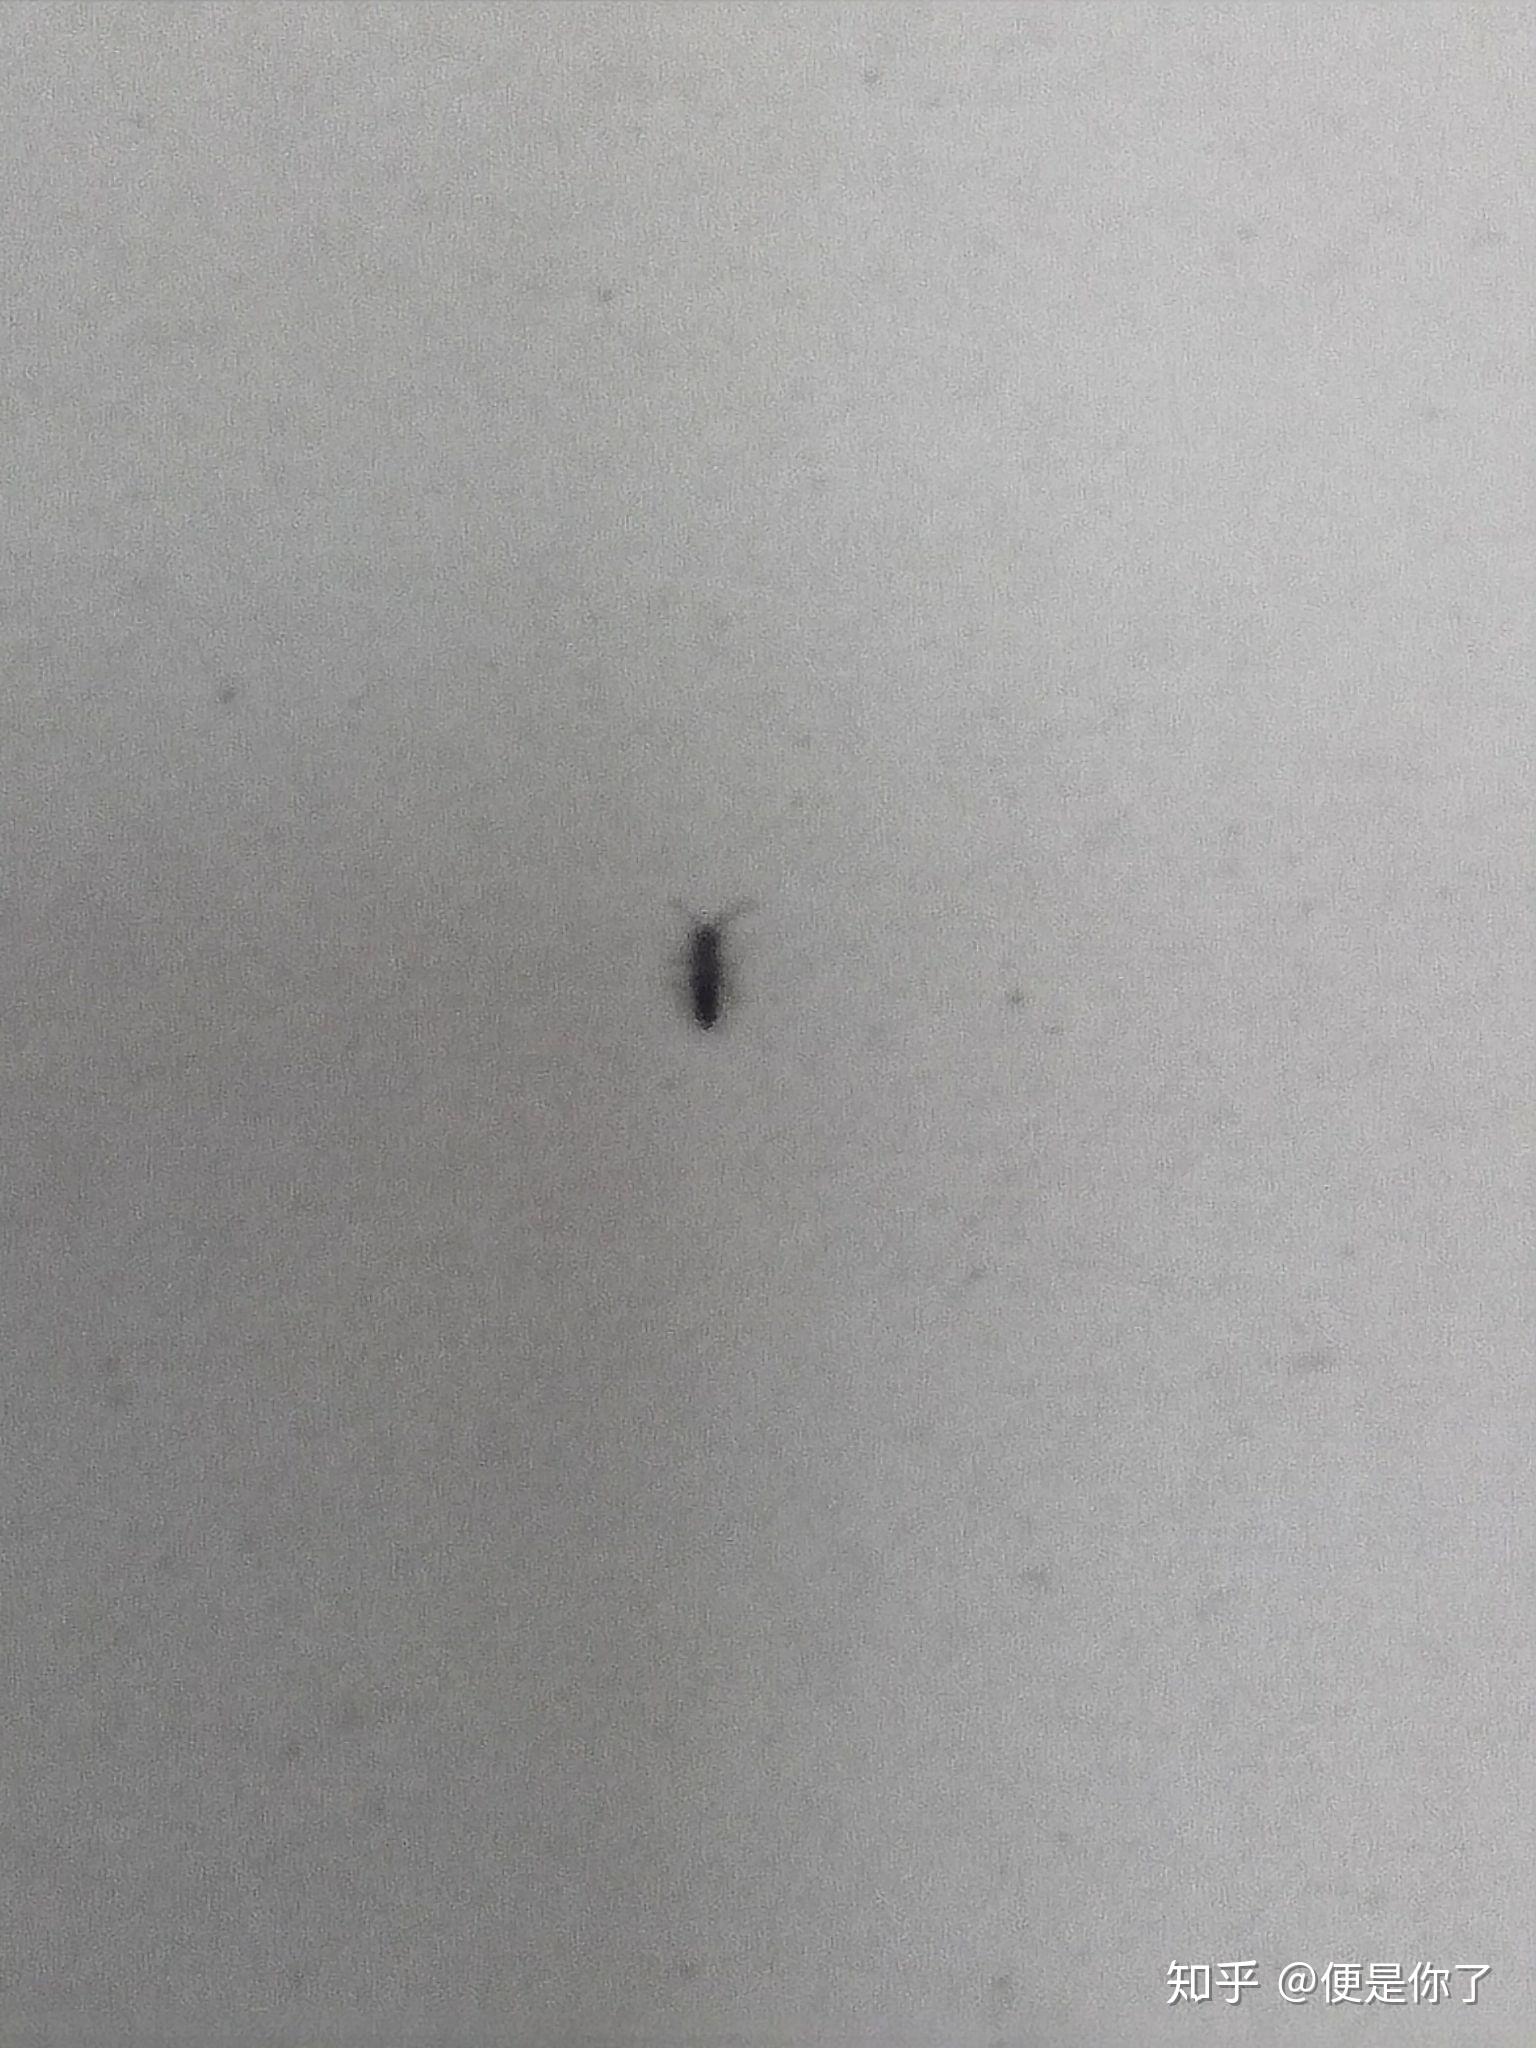 【求专家】这种黑色细长多足的小虫子是什么？多出现在厨房厕所。要如何消灭？【附图】_百度知道